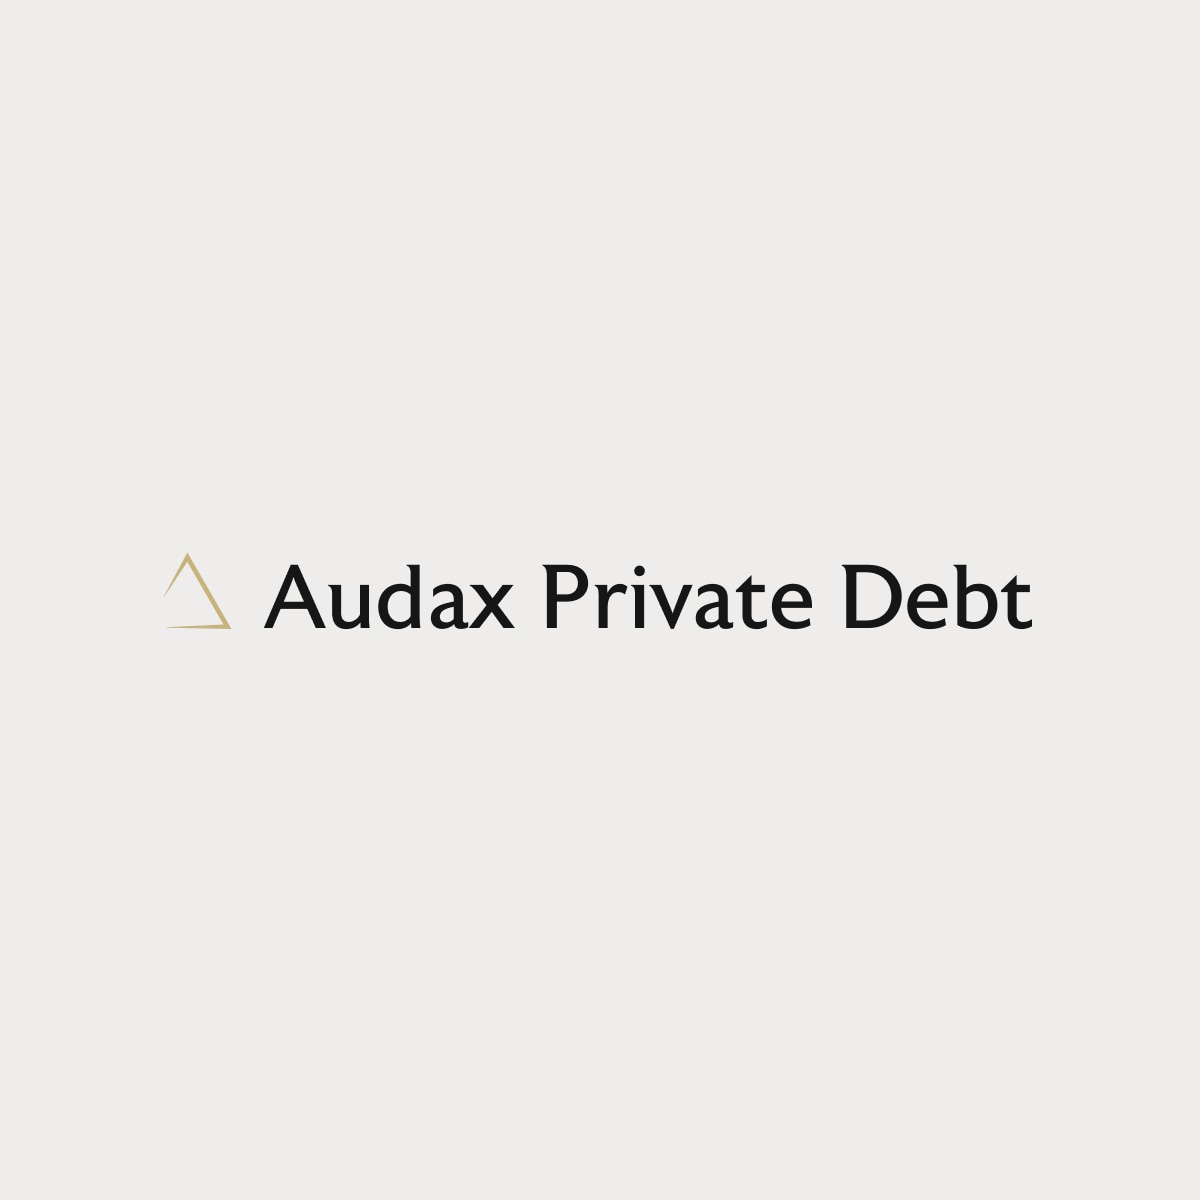 Audax Private Debt